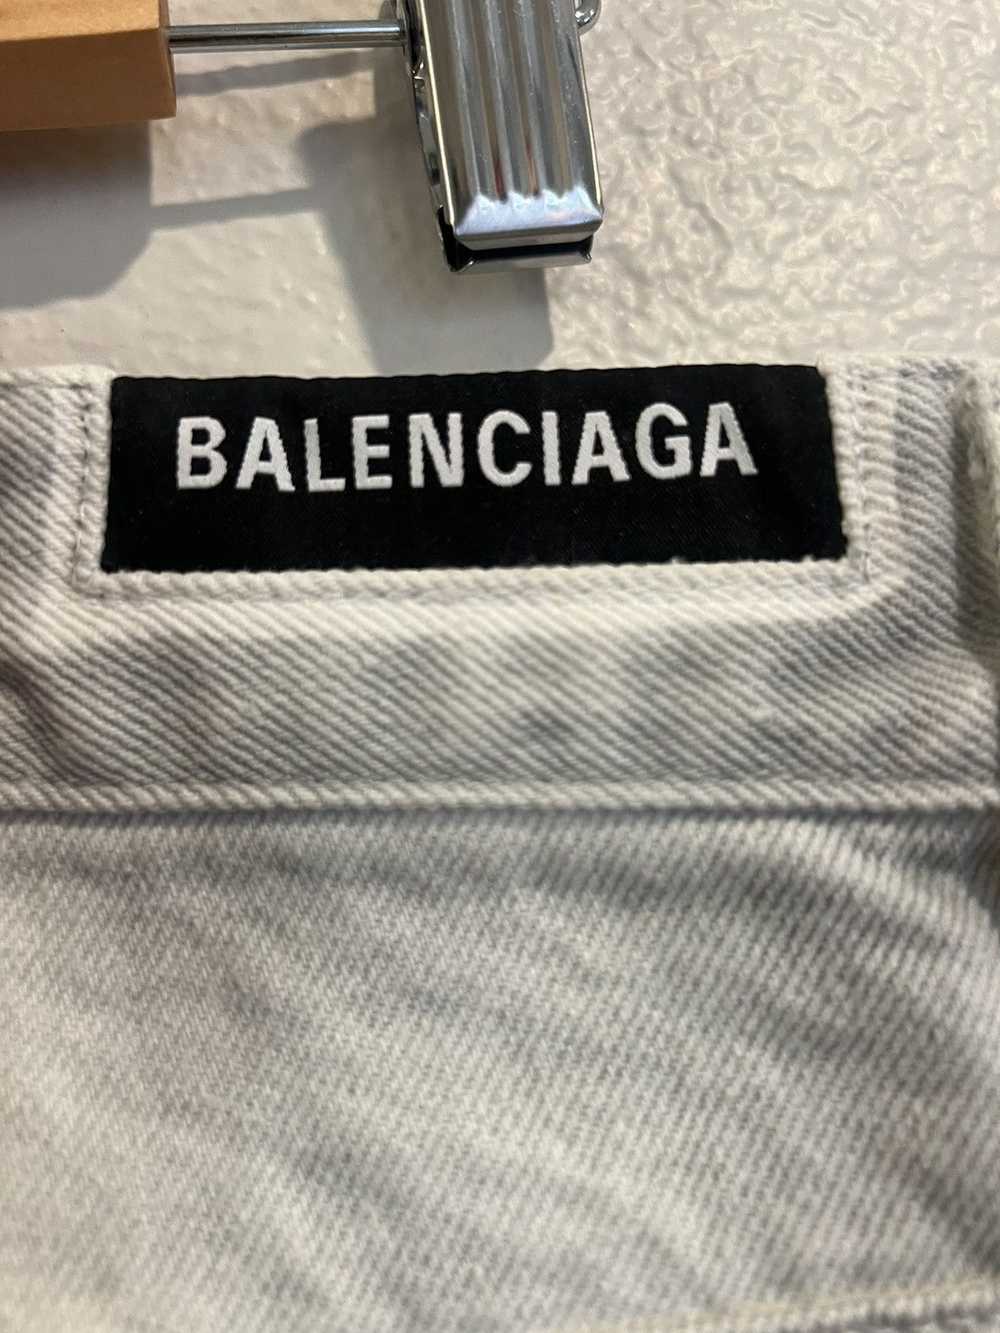 Balenciaga Balenciaga 2020 White and Grey Distres… - image 6